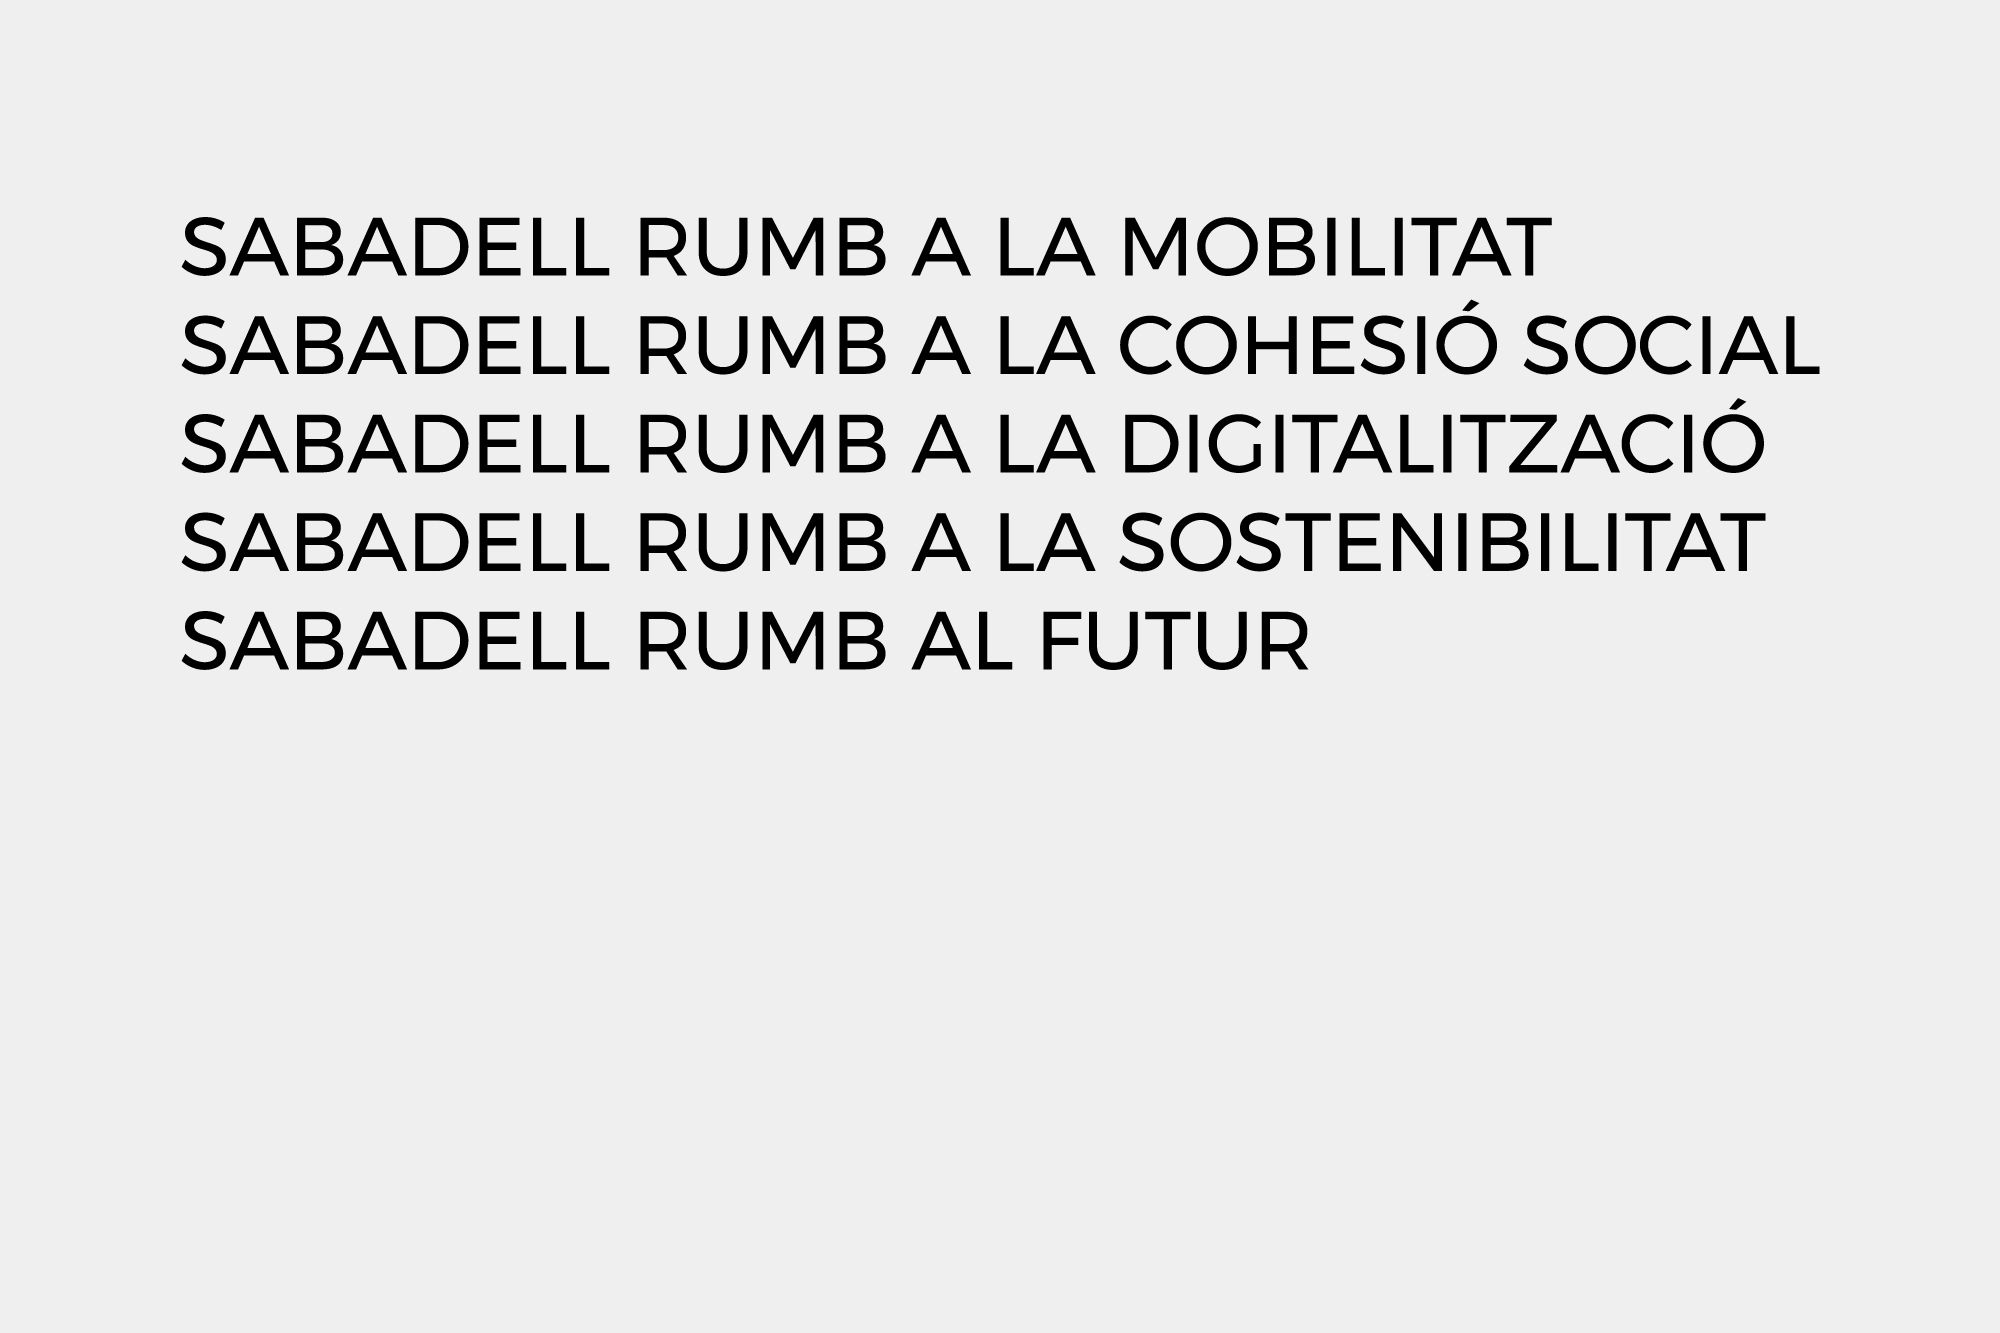 Campanya del ayuntamiento de Sabadell "Sabadell rumb al futur" , tipografia eslogan